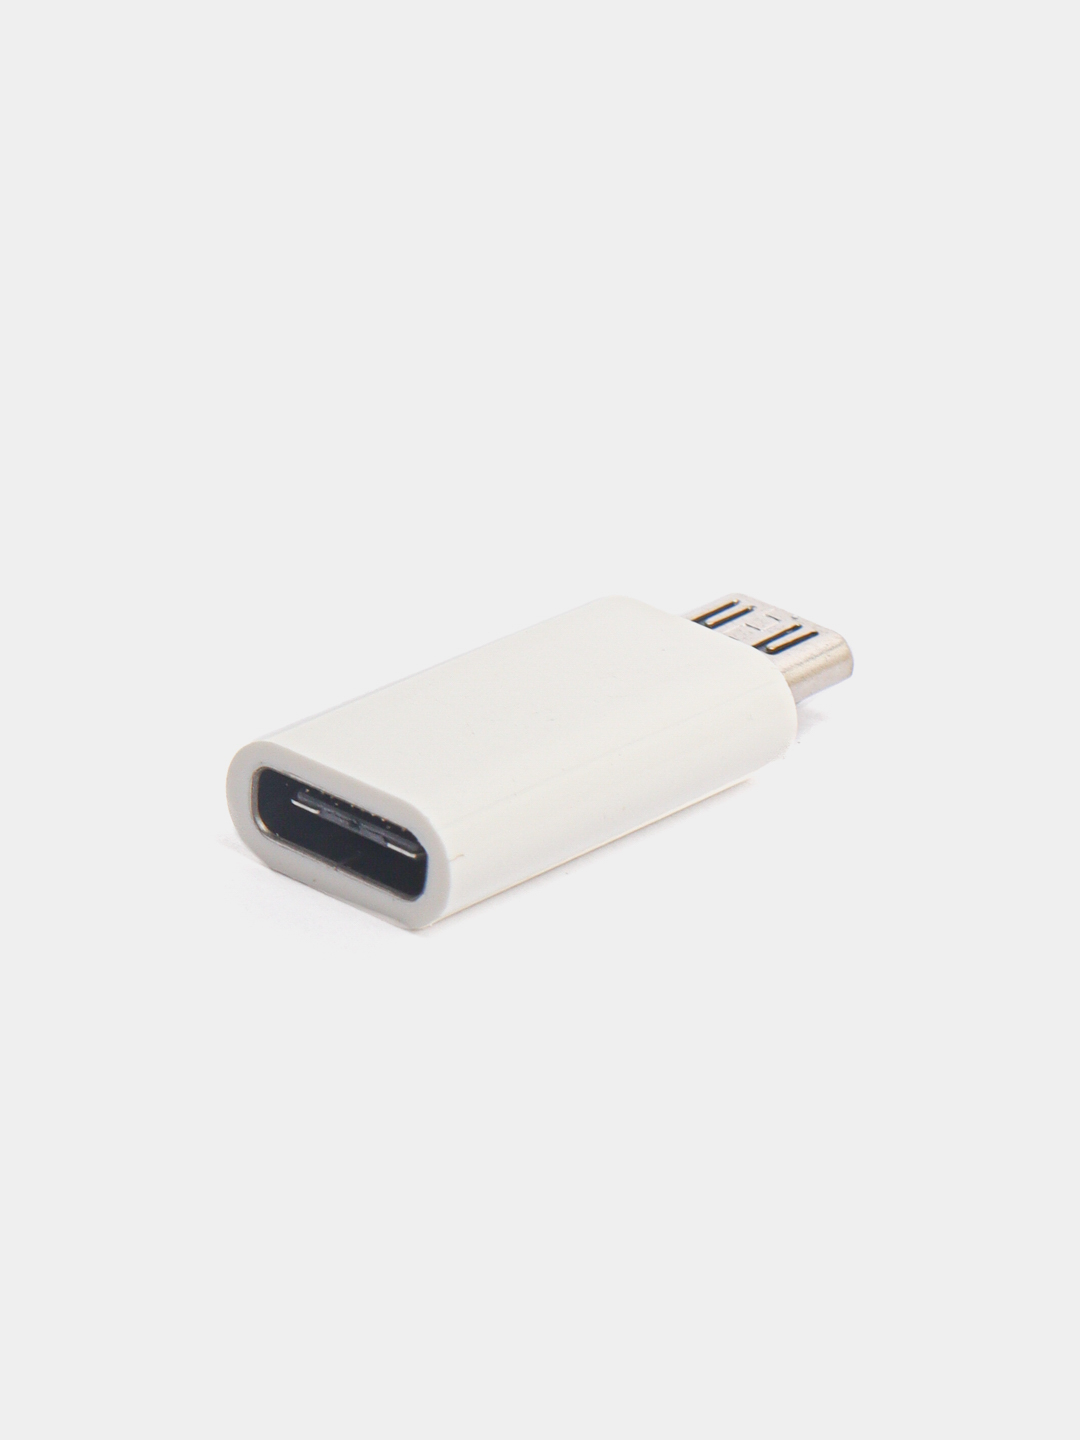  переходник USB Type C на micro USB за 89.1 ₽  в интернет .